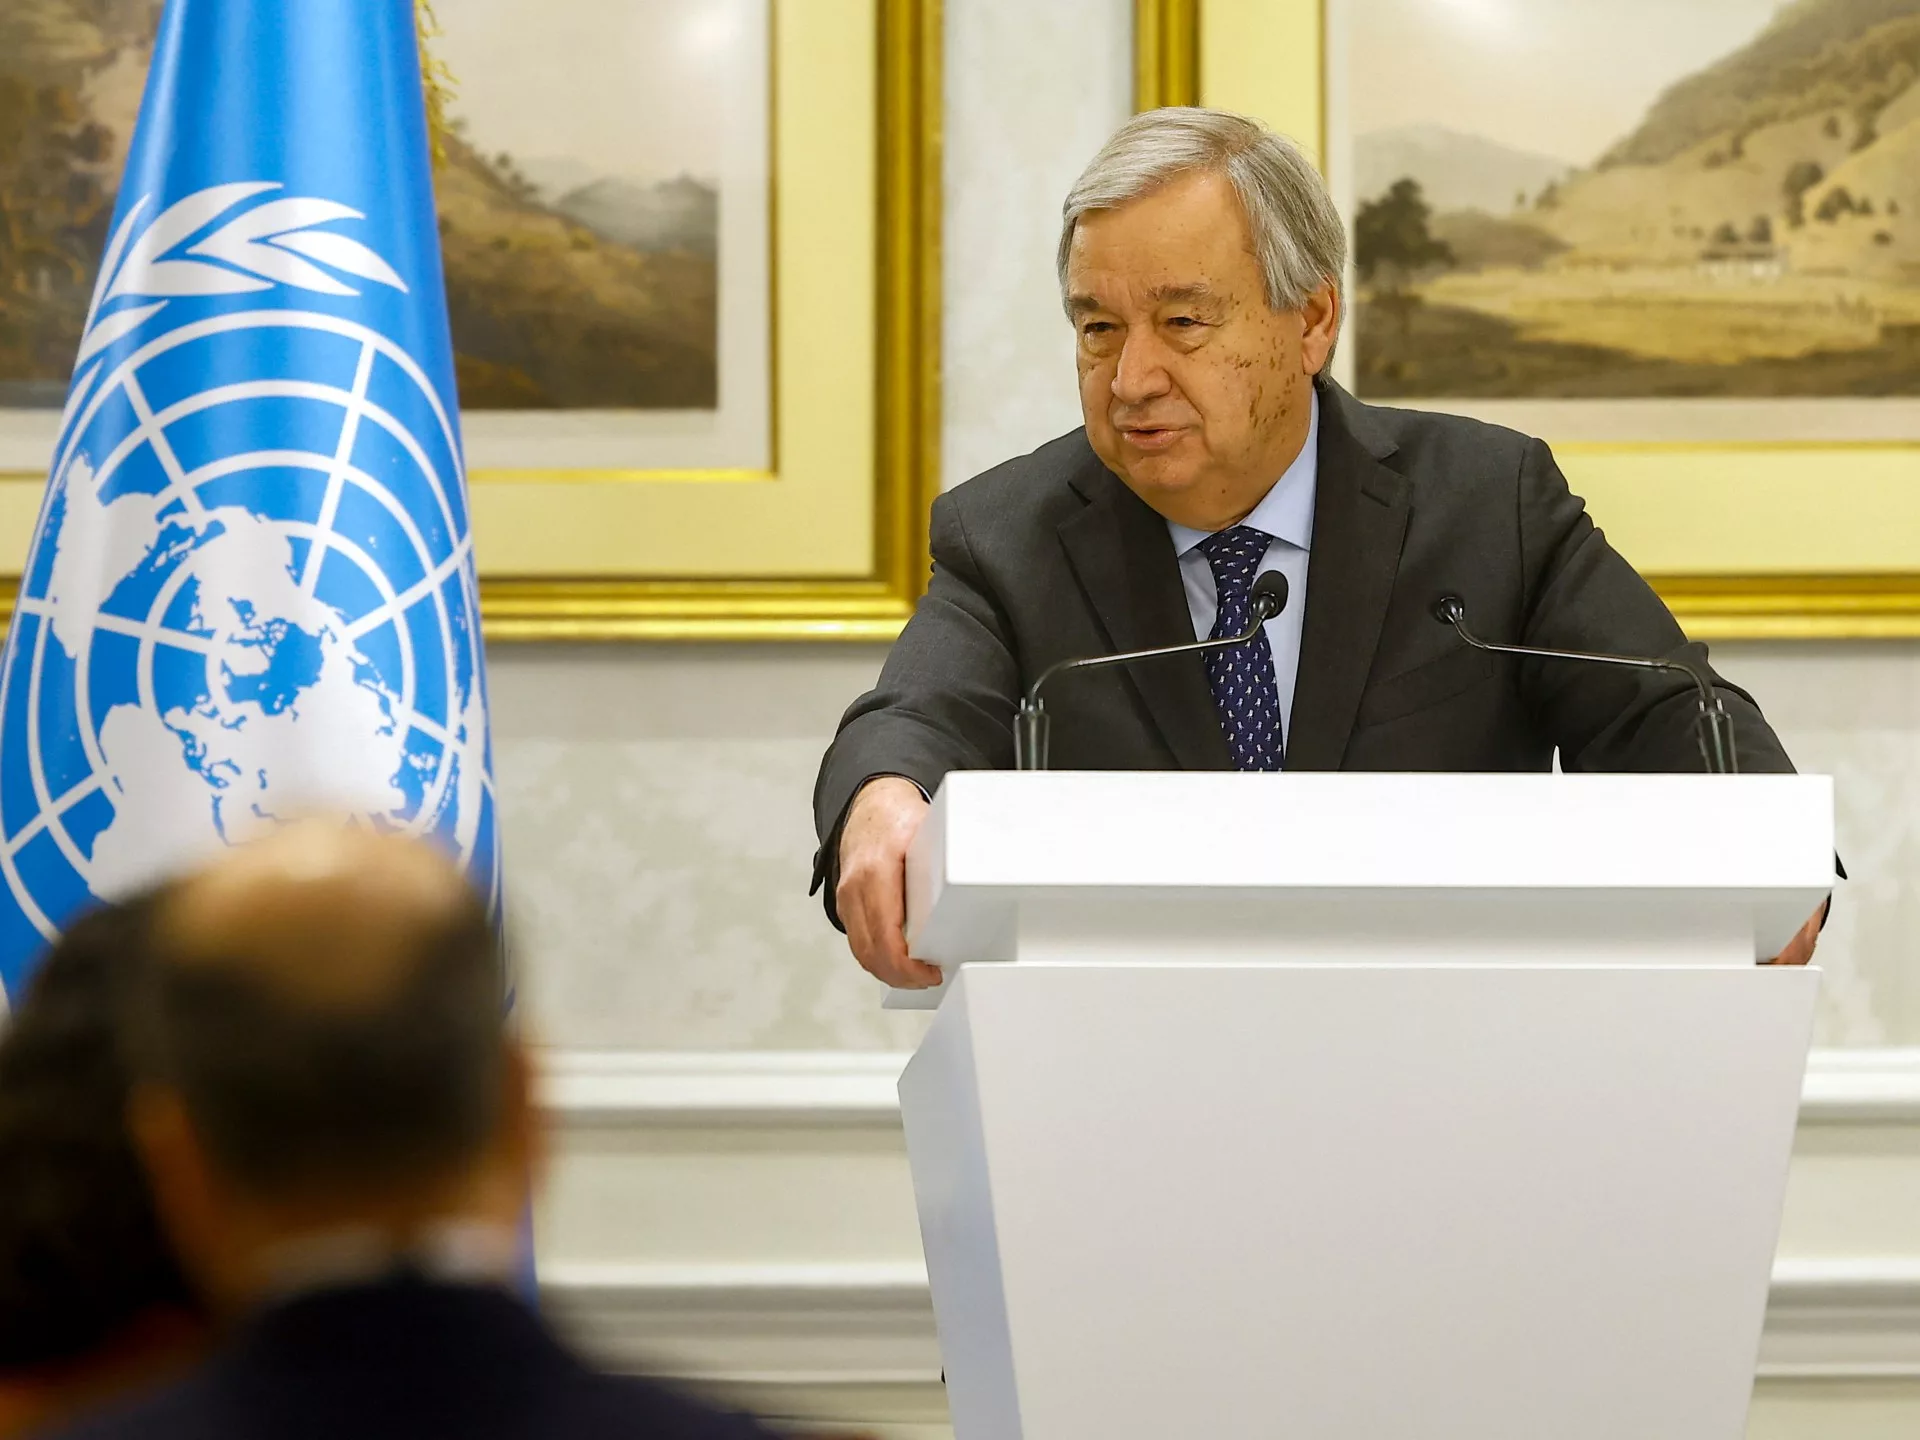 Las condiciones de los talibanes para participar en la reunión de la ONU son "inaceptables", dice Guterres |  Noticias de las Naciones Unidas